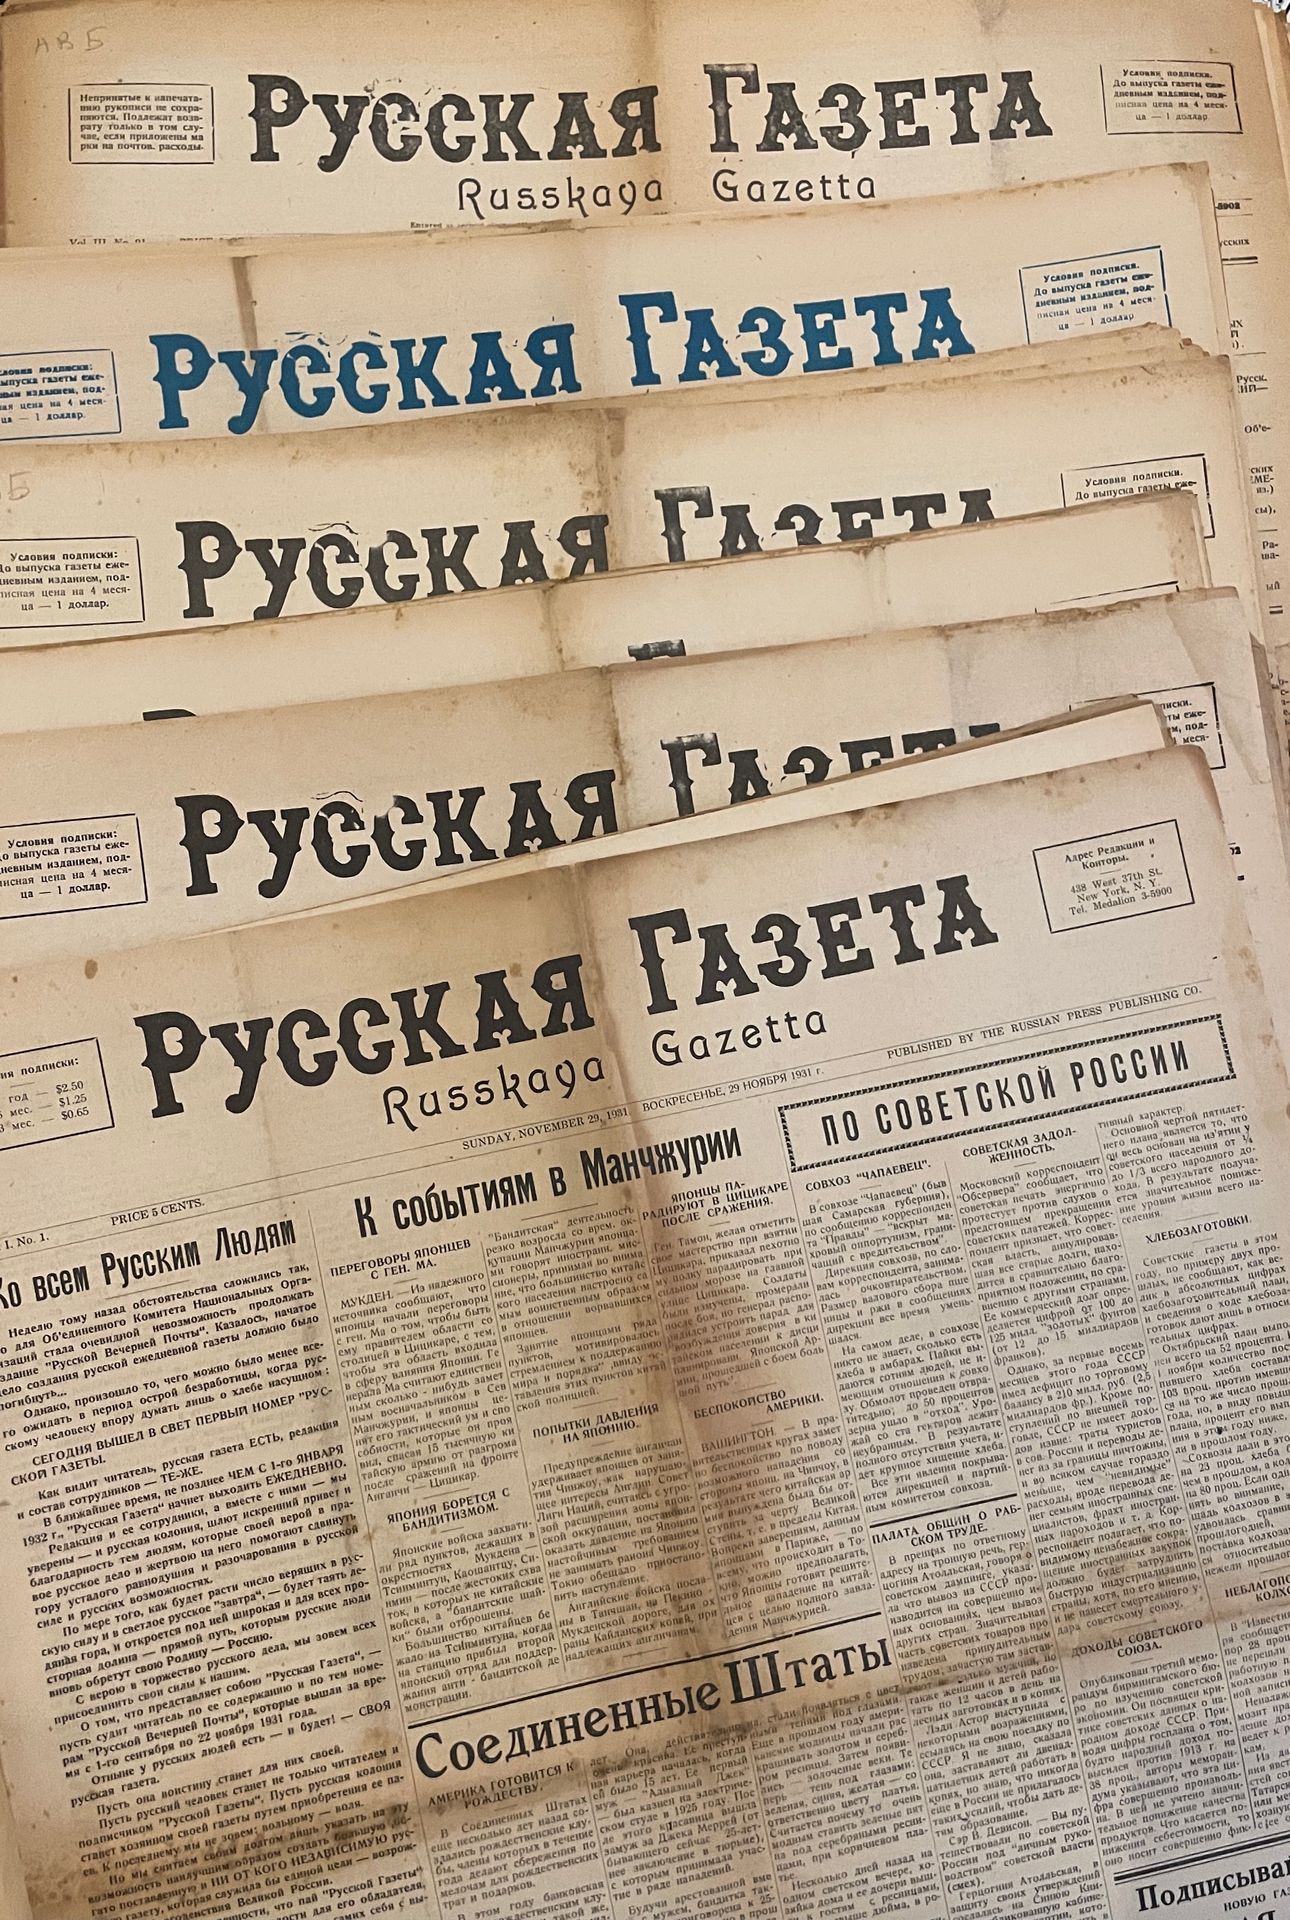 Null JOURNAUX PATRIOTIQUES de l’émigration russe

«Journal russe». 1931-1934. 

&hellip;